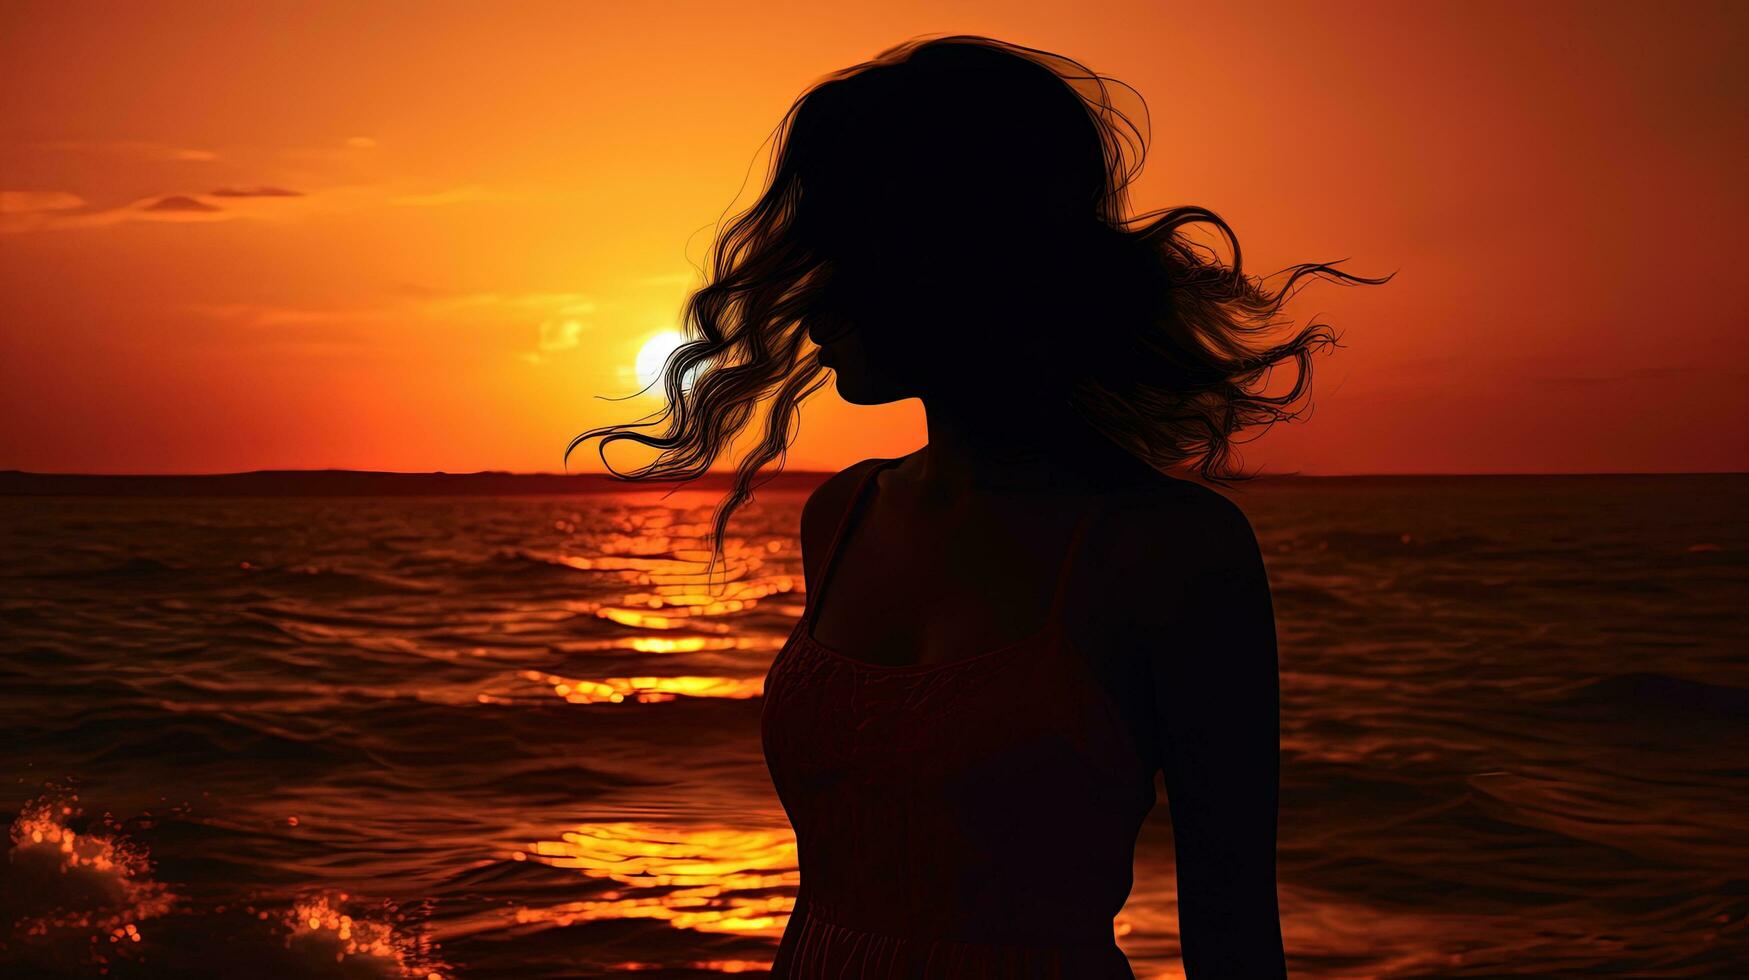 niña s silueta en contra mar y puesta de sol foto